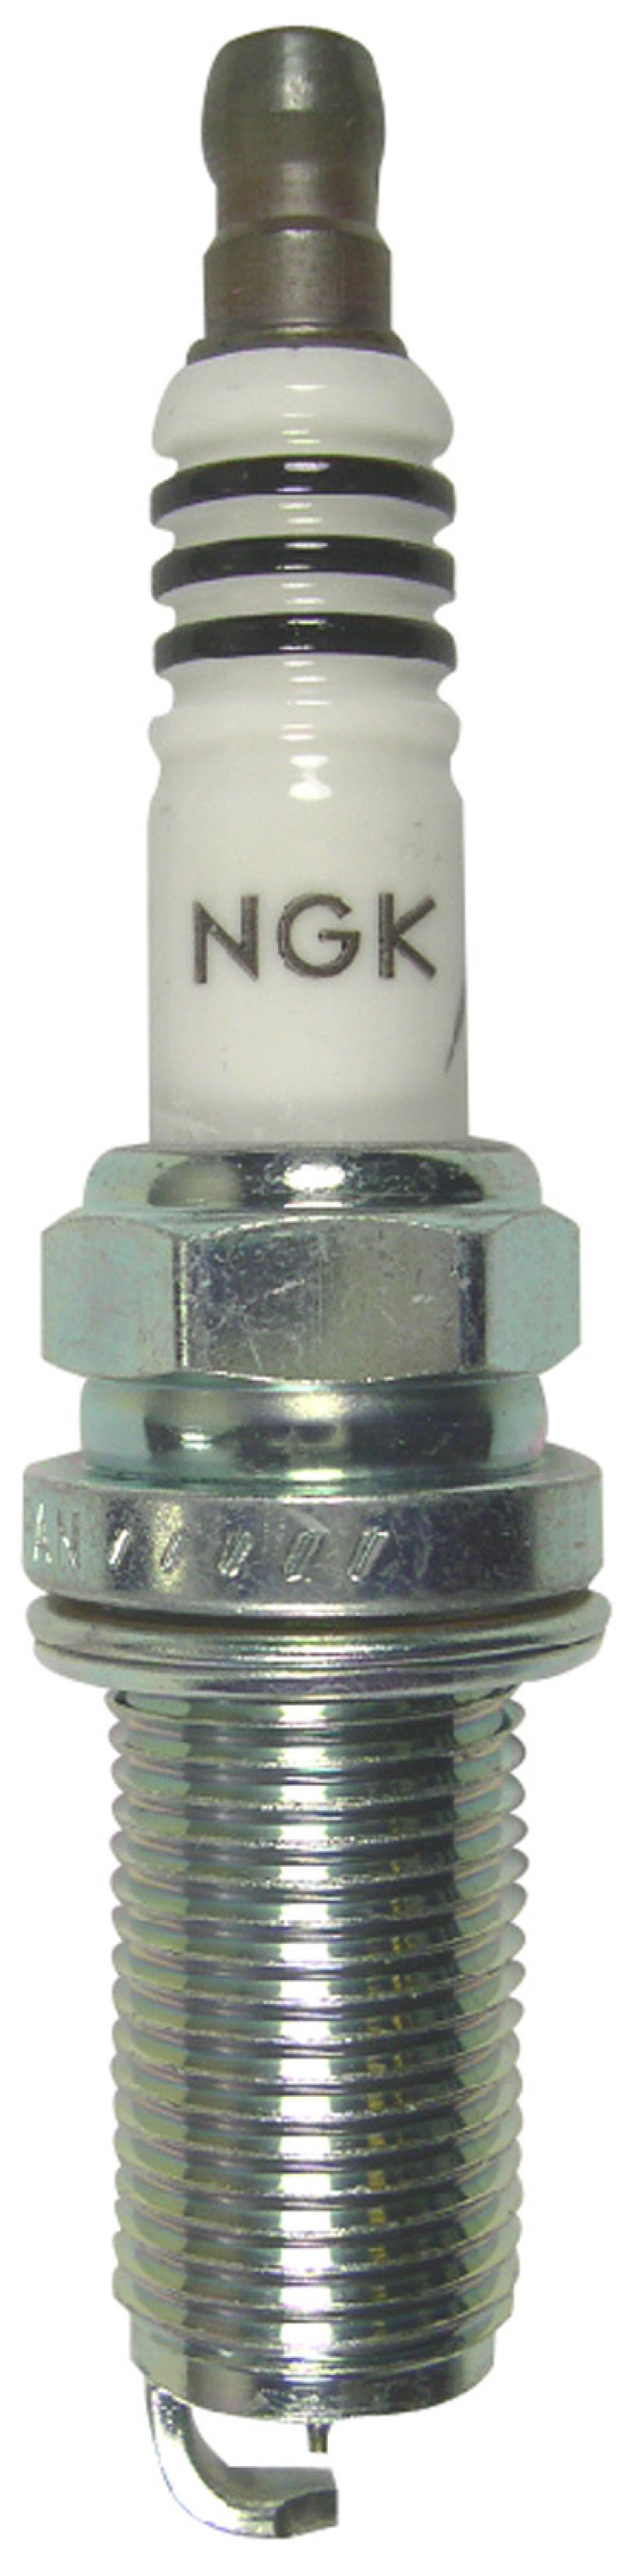 NGK Iridium Spark Plug Box of 4 (LFR5AIX-11).